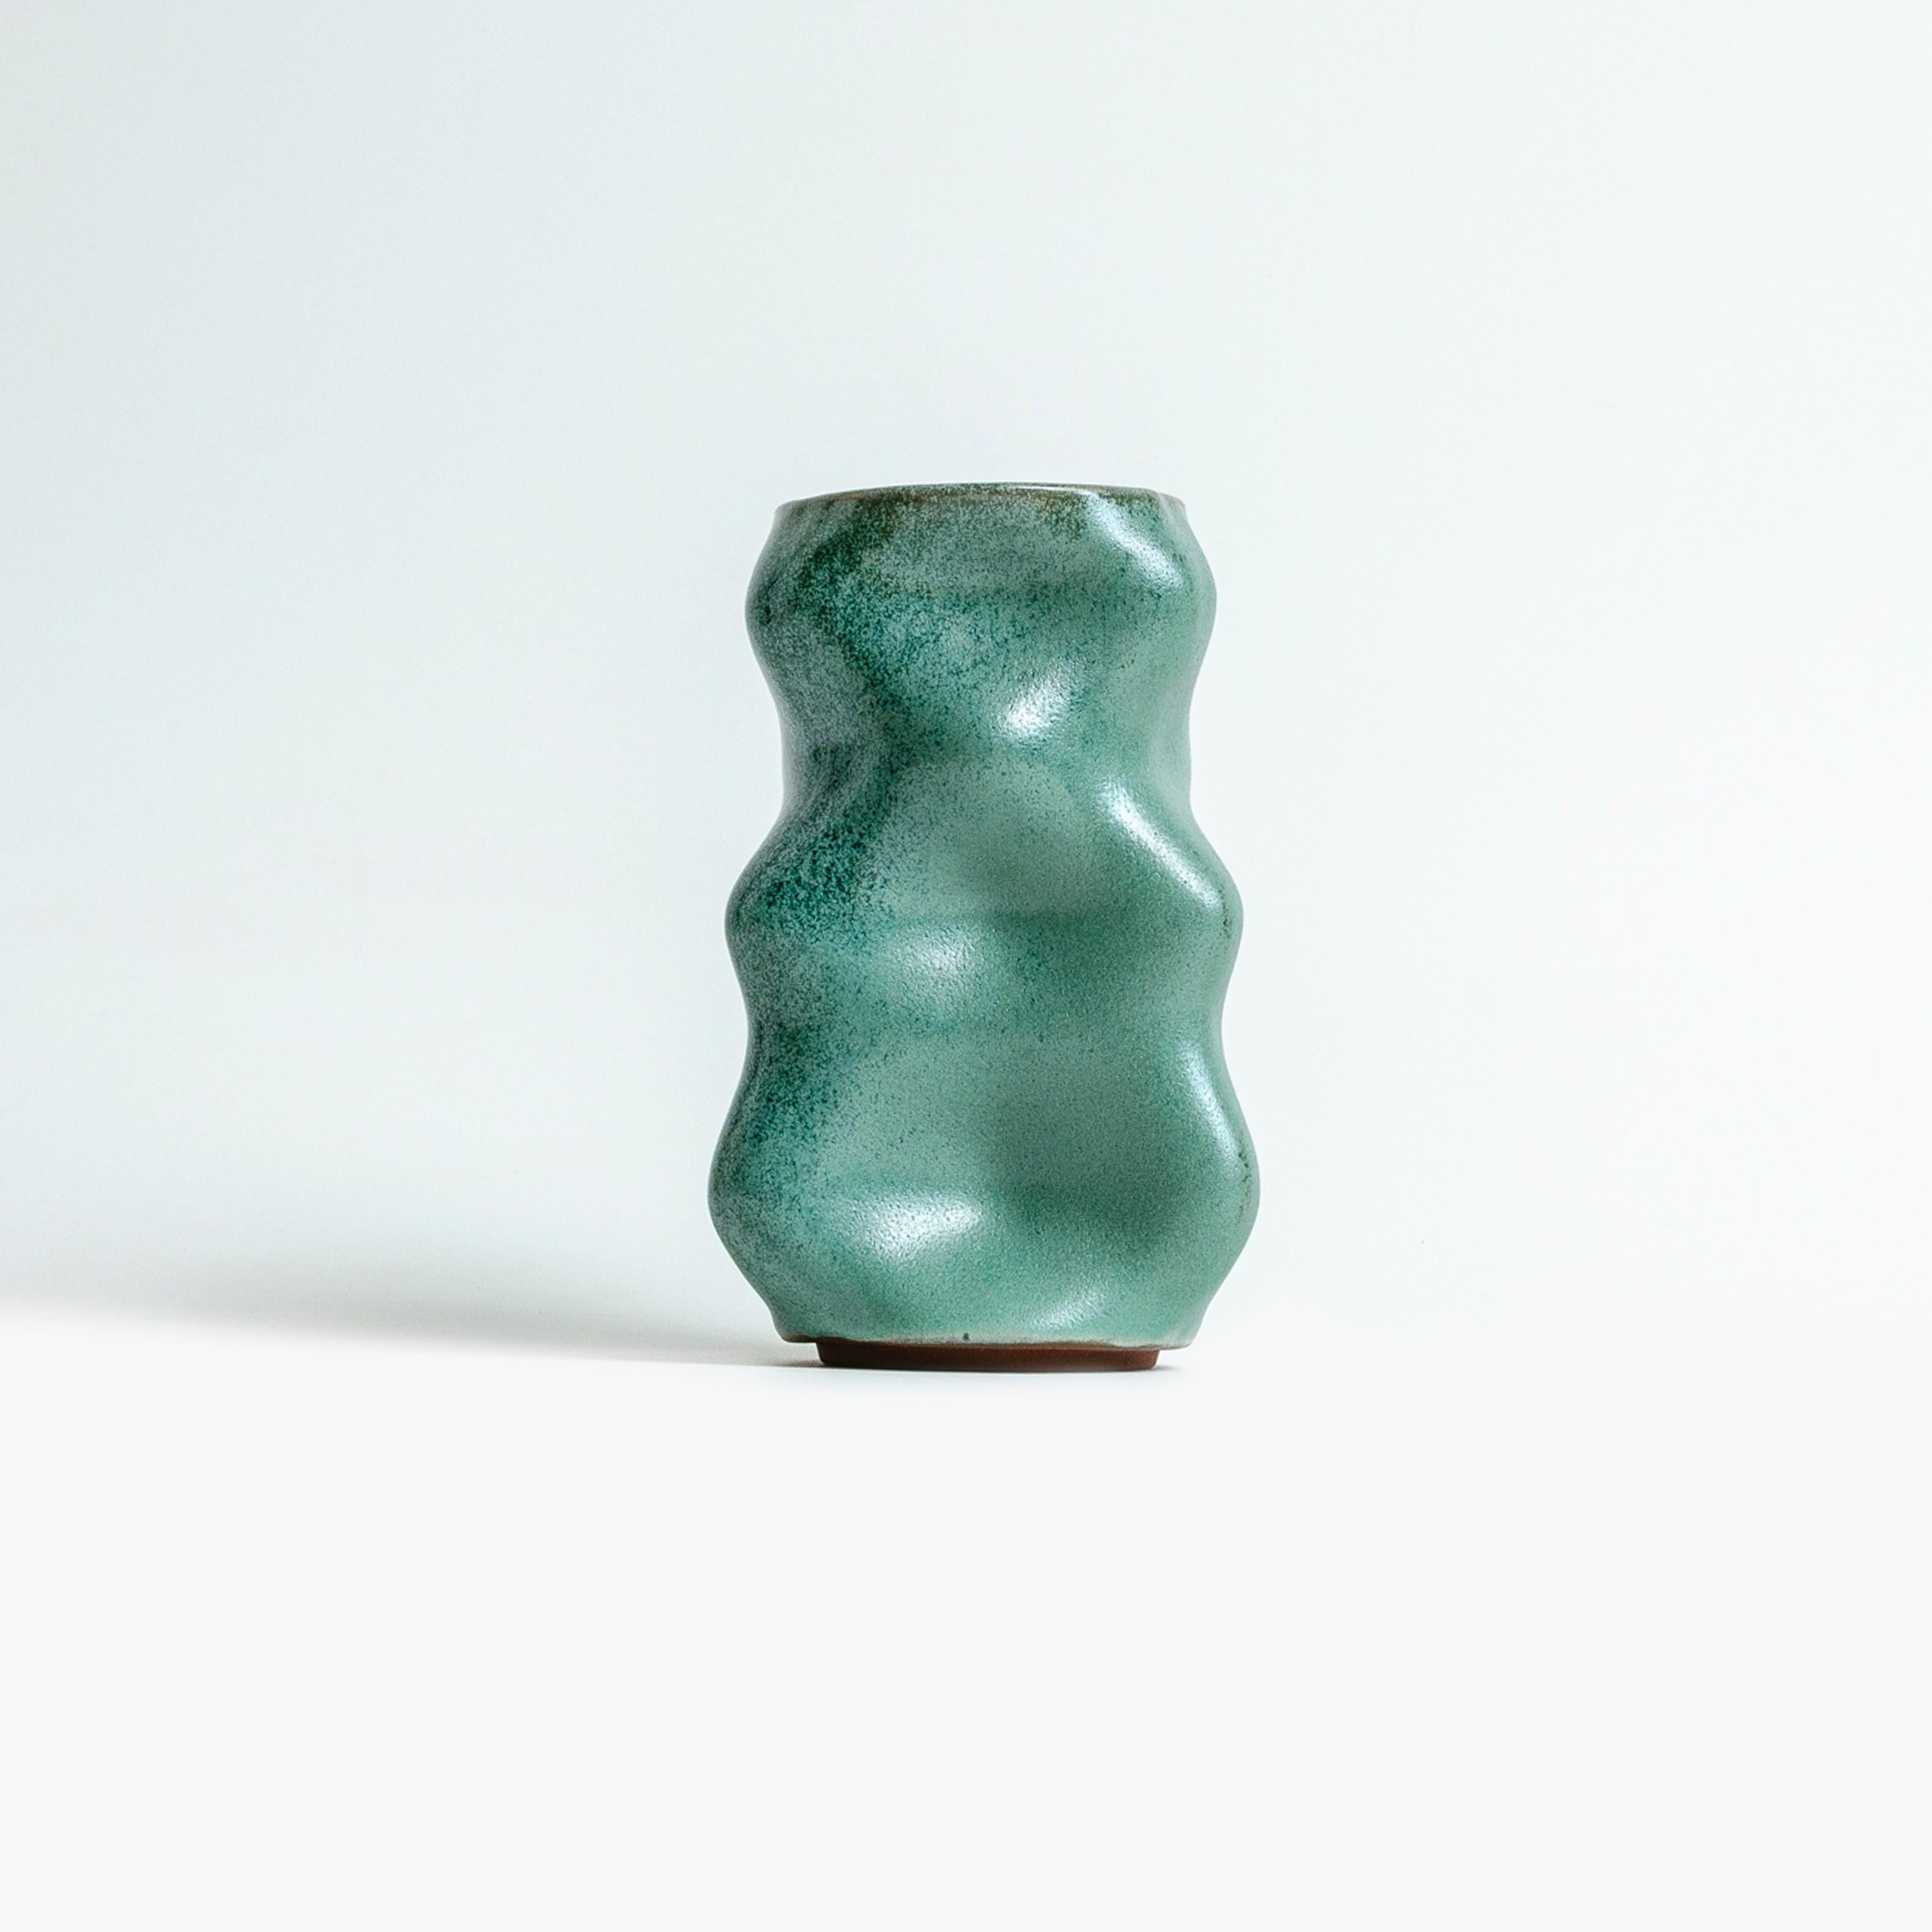 Nomad ist ein modulares System von Vasen, das unendlich viele Verwendungsmöglichkeiten bietet. Die Module wurden so konzipiert, dass sie entweder allein funktionieren oder vertikal (Totem) oder horizontal zusammengefügt werden können, um die